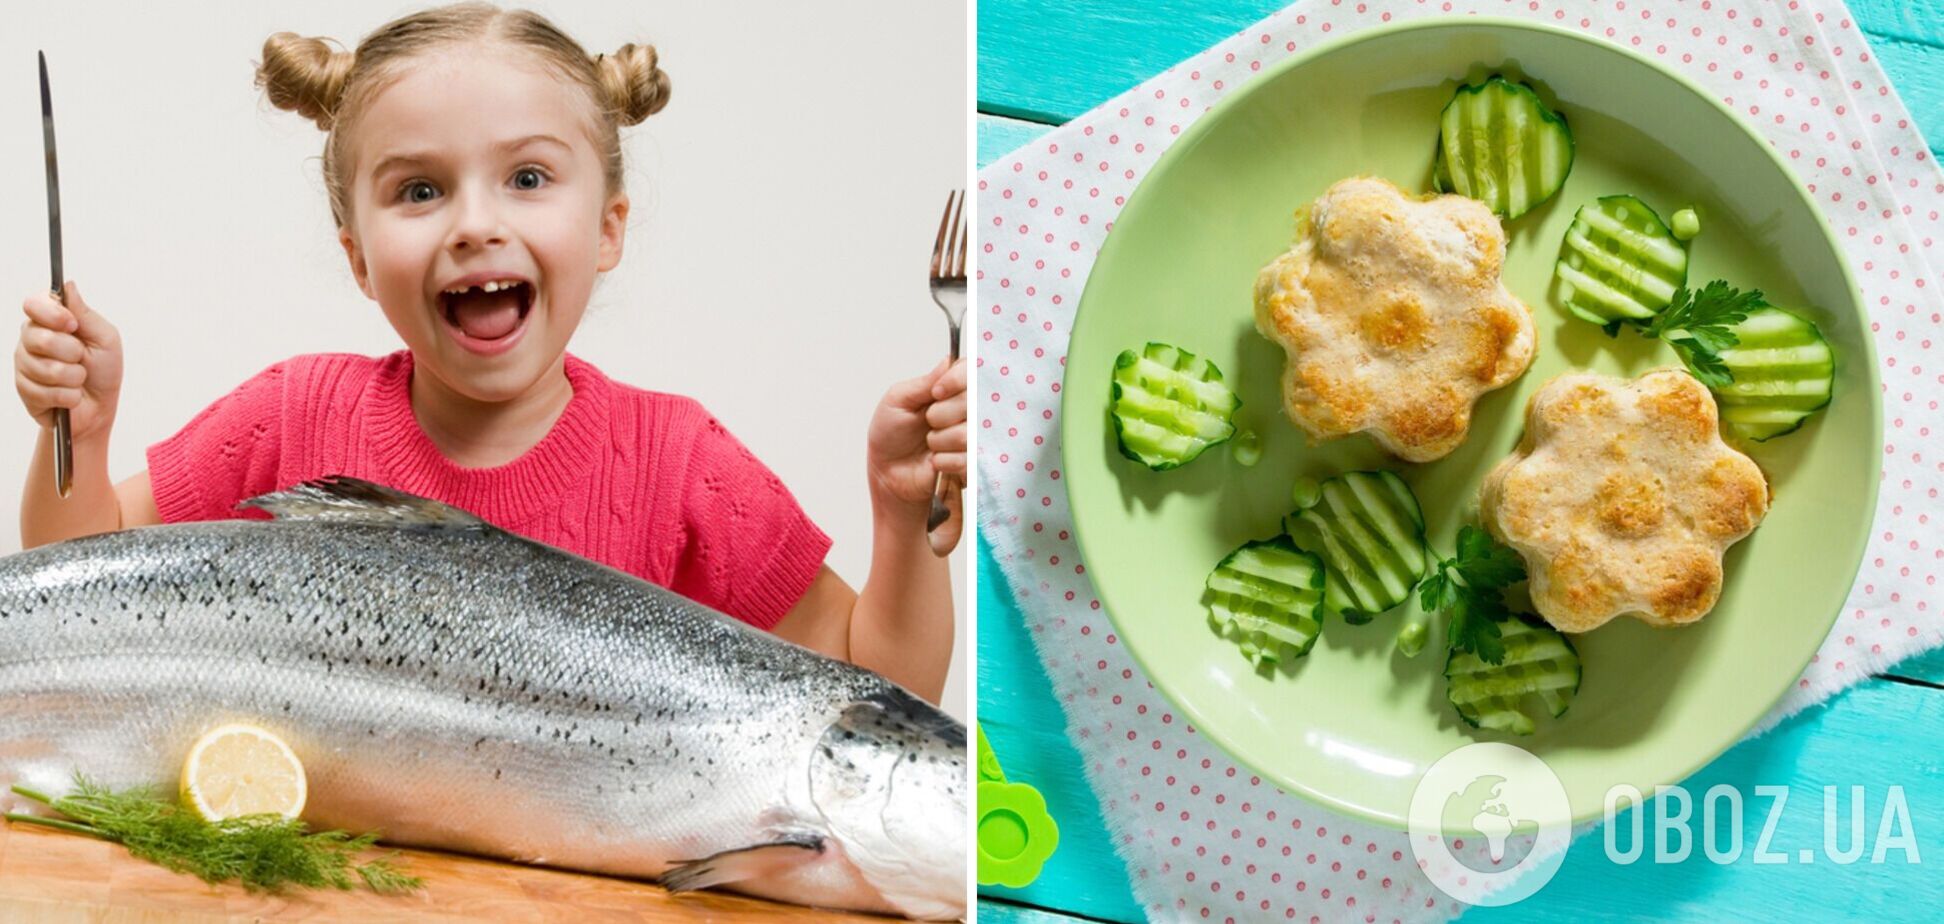 Как необычно подать рыбу, чтобы ели даже дети: идея замечательного блюда